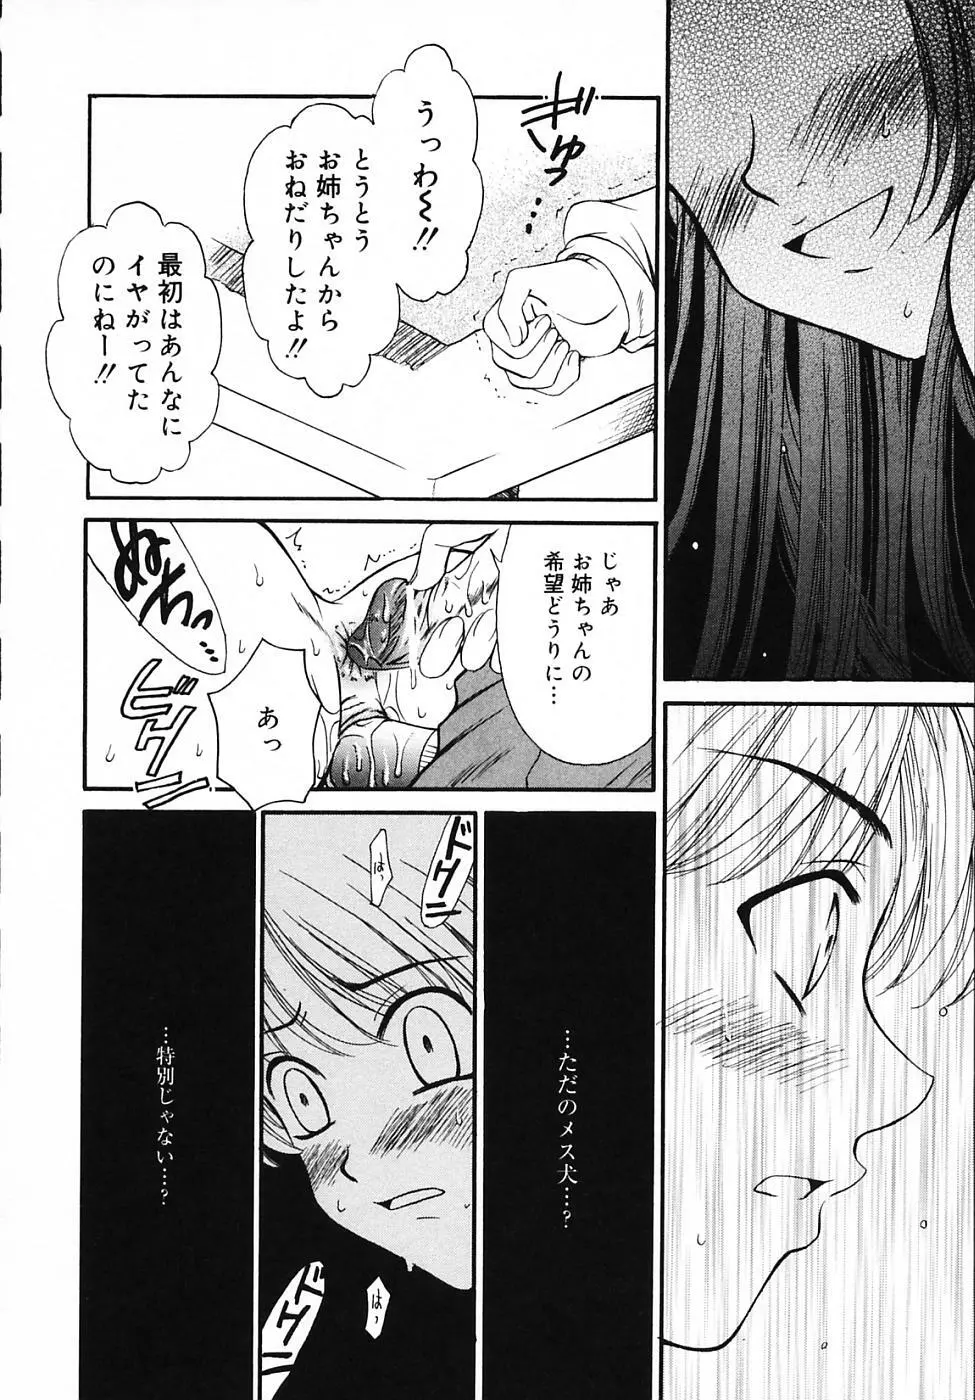 Kodomo no Jikan Vol.03 16ページ